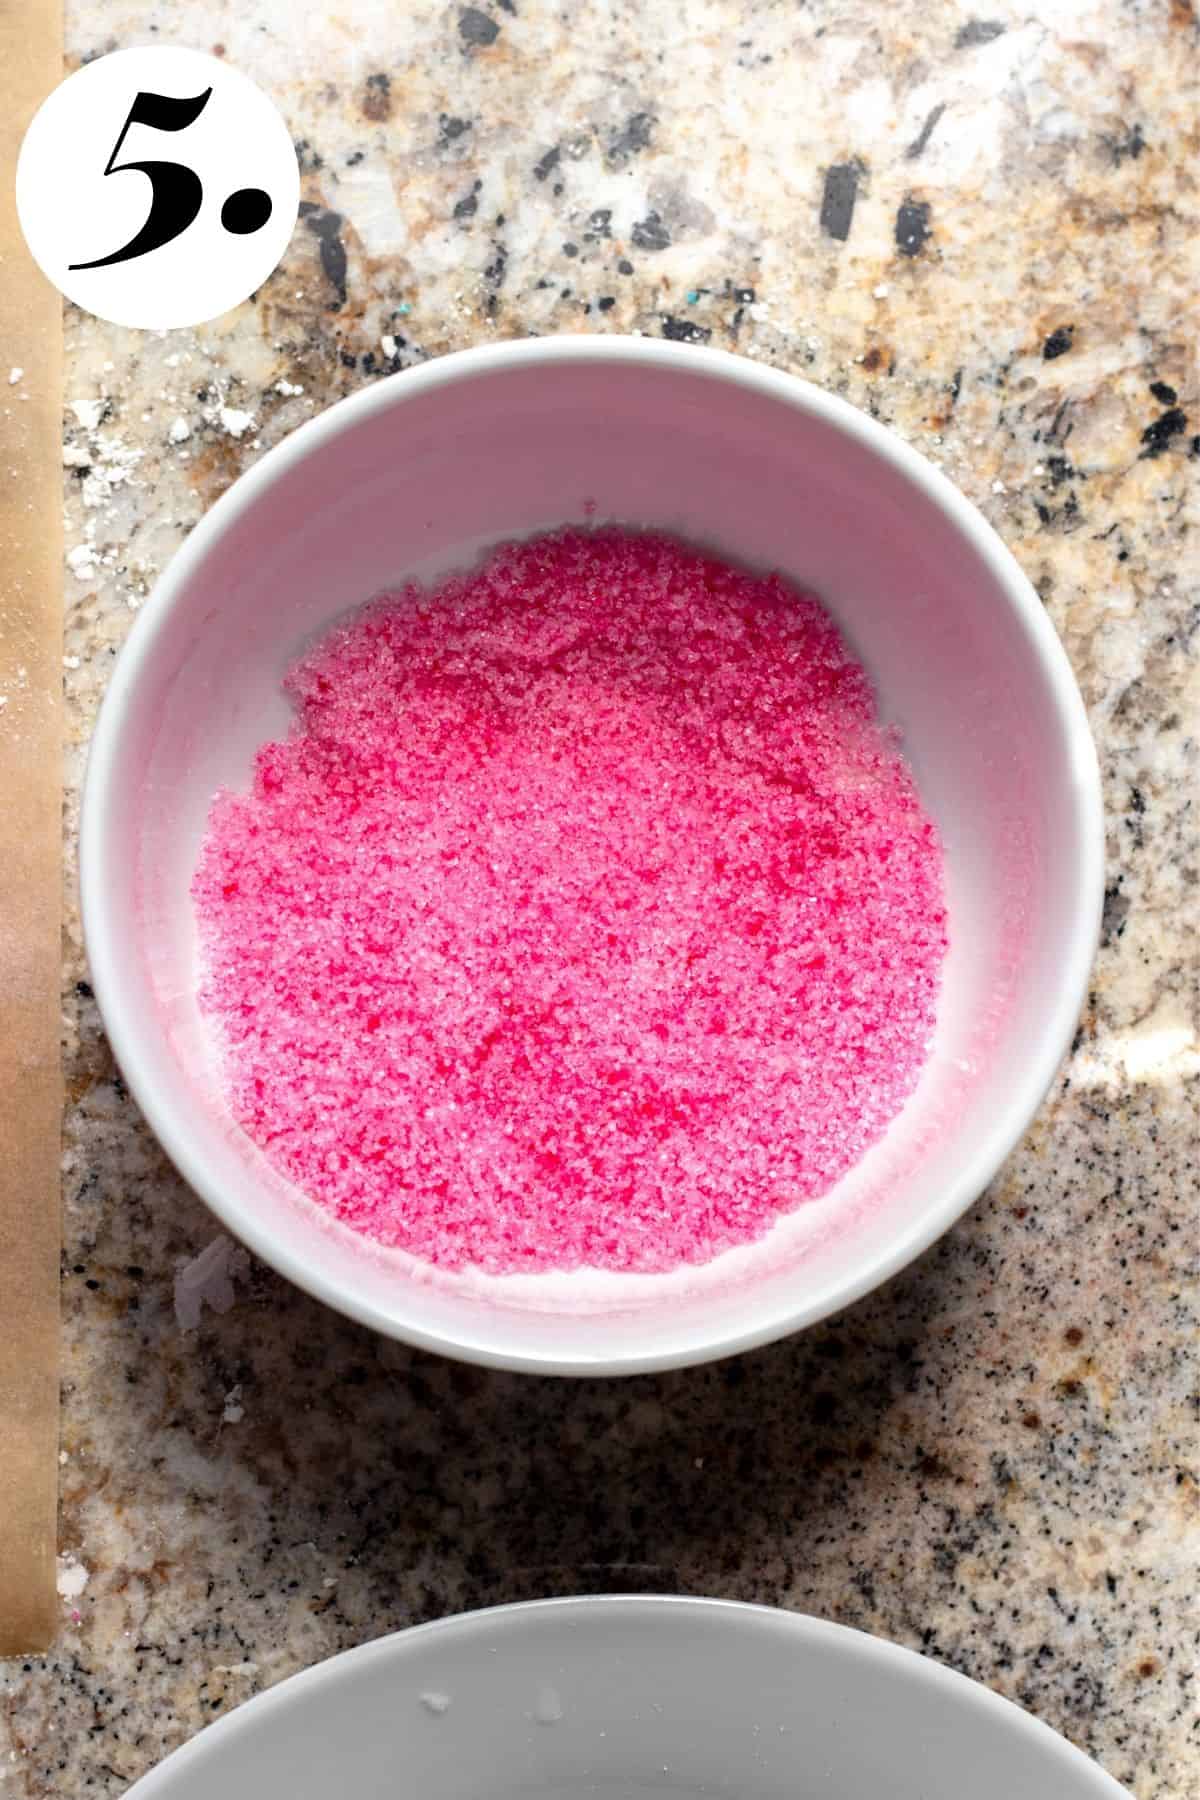 Pink sugar in white bowl.